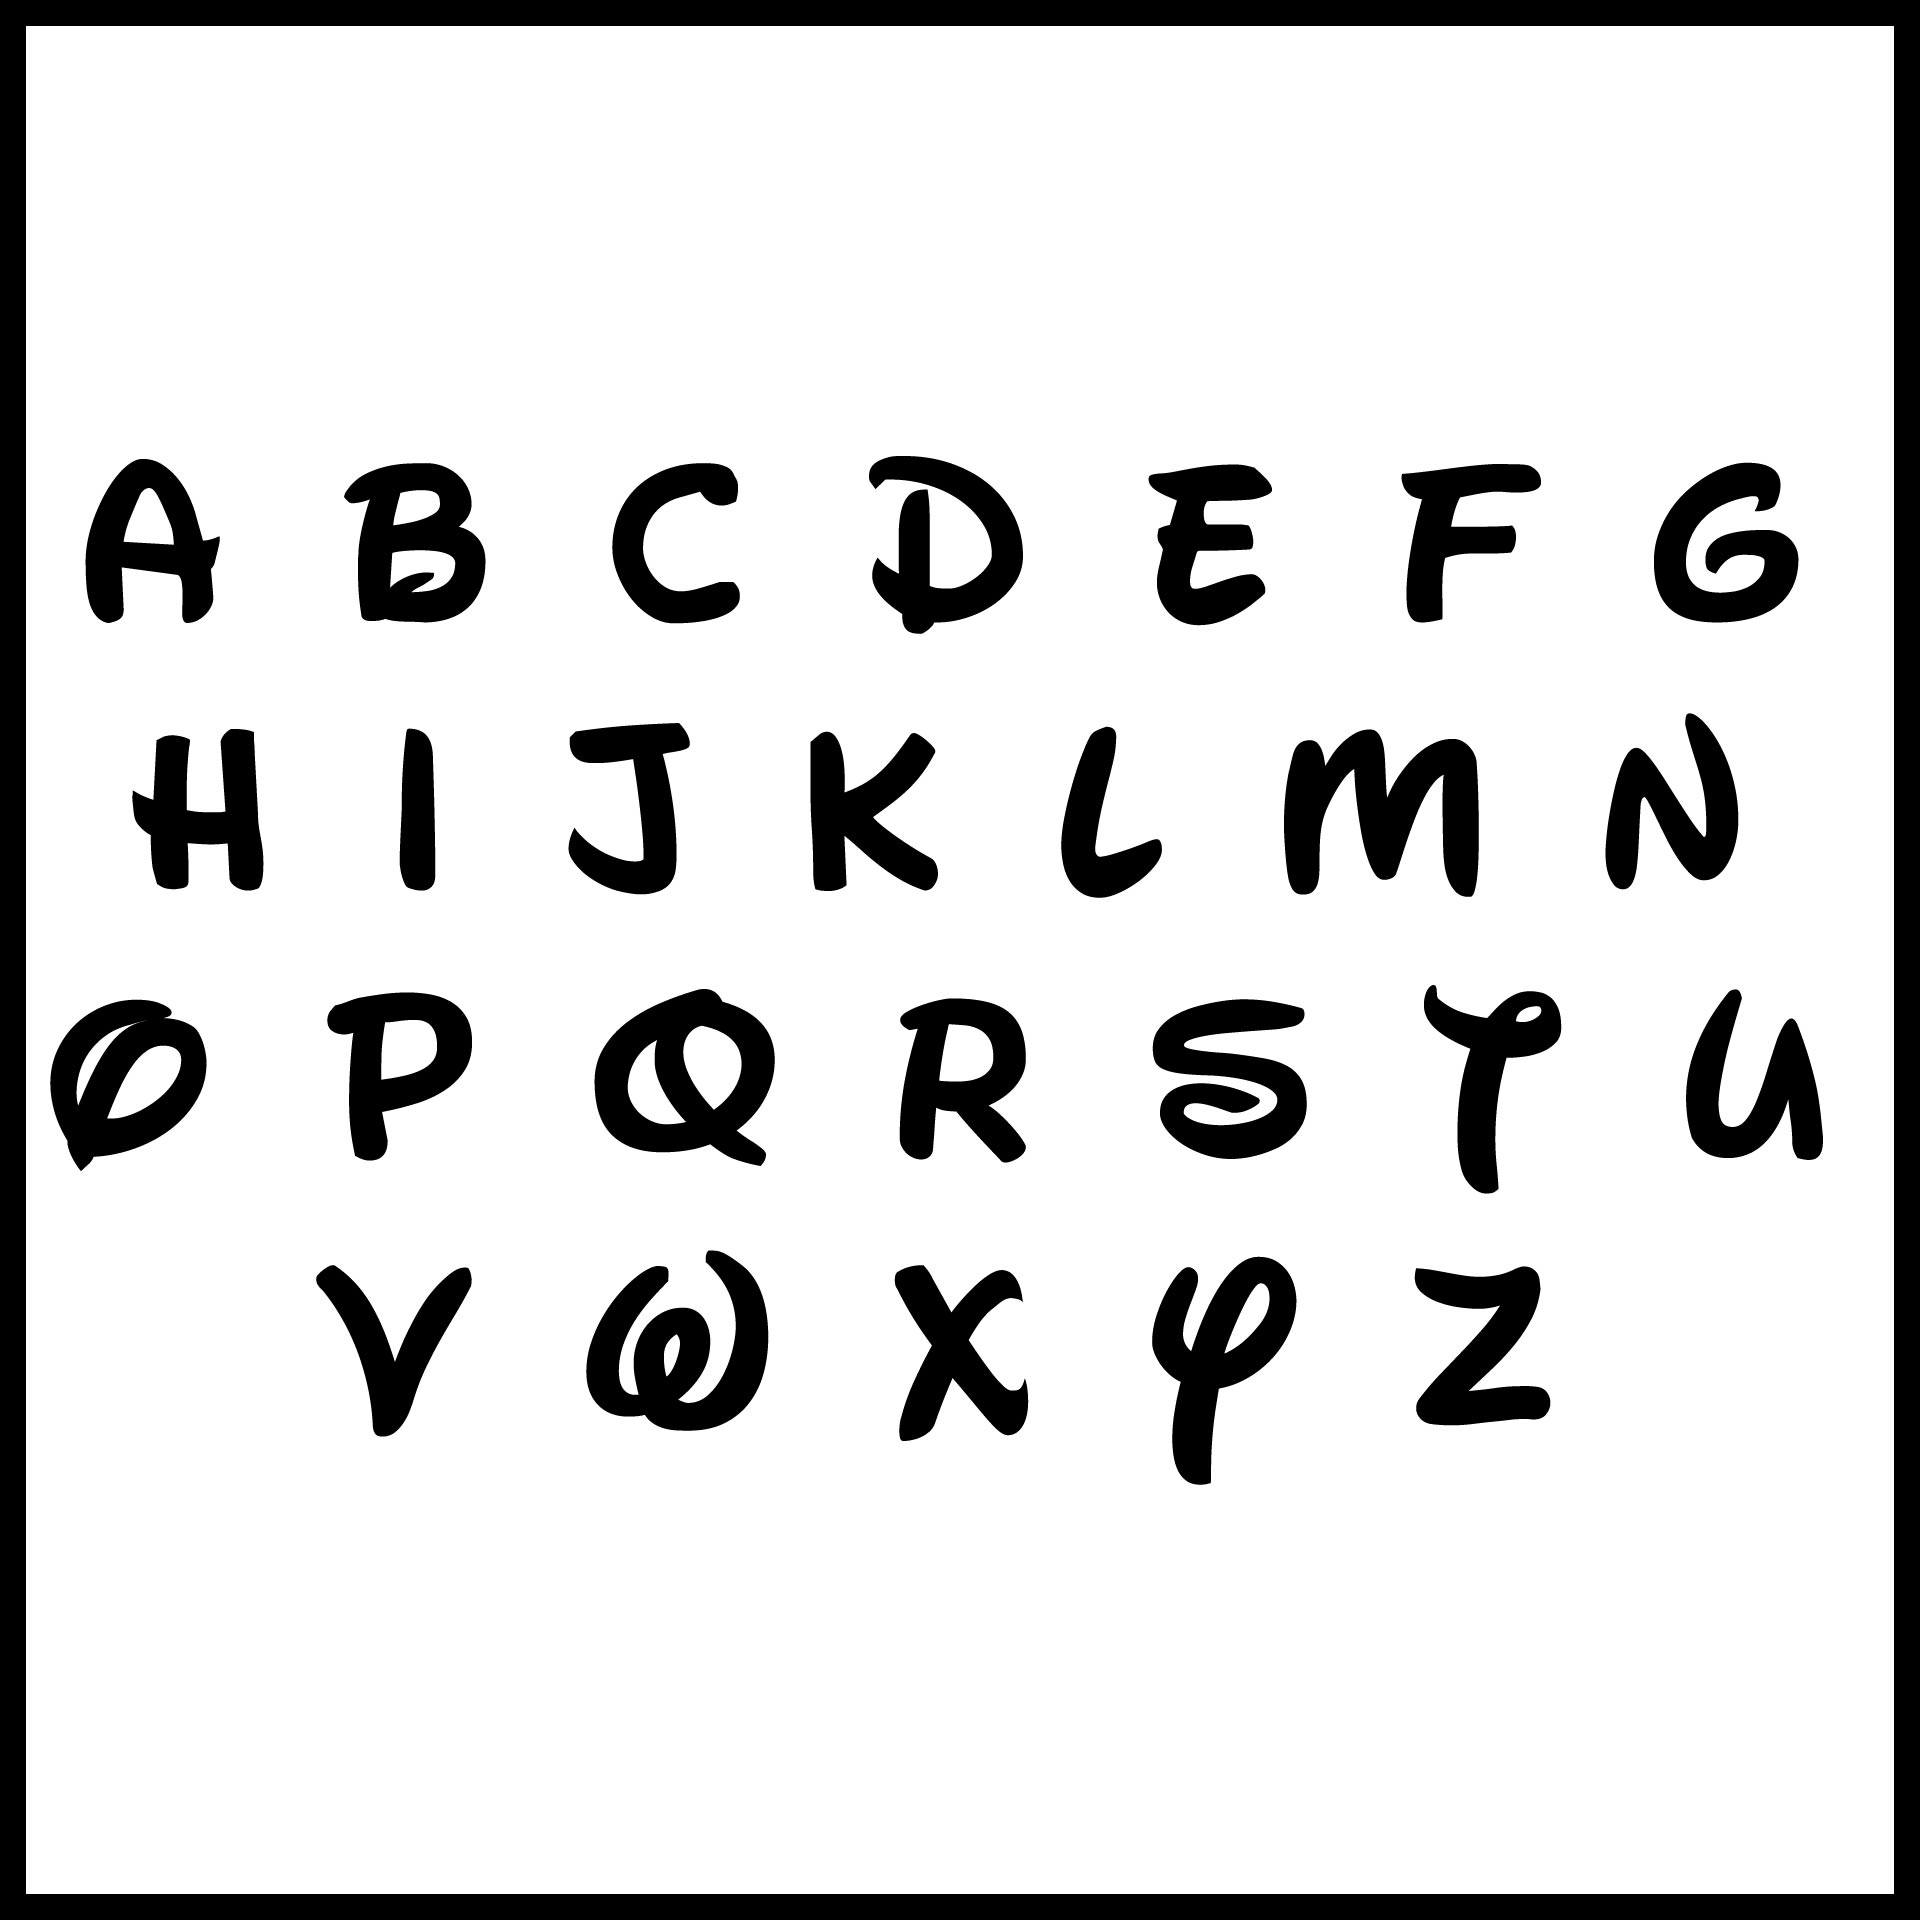 Disney Font Alphabet Letters